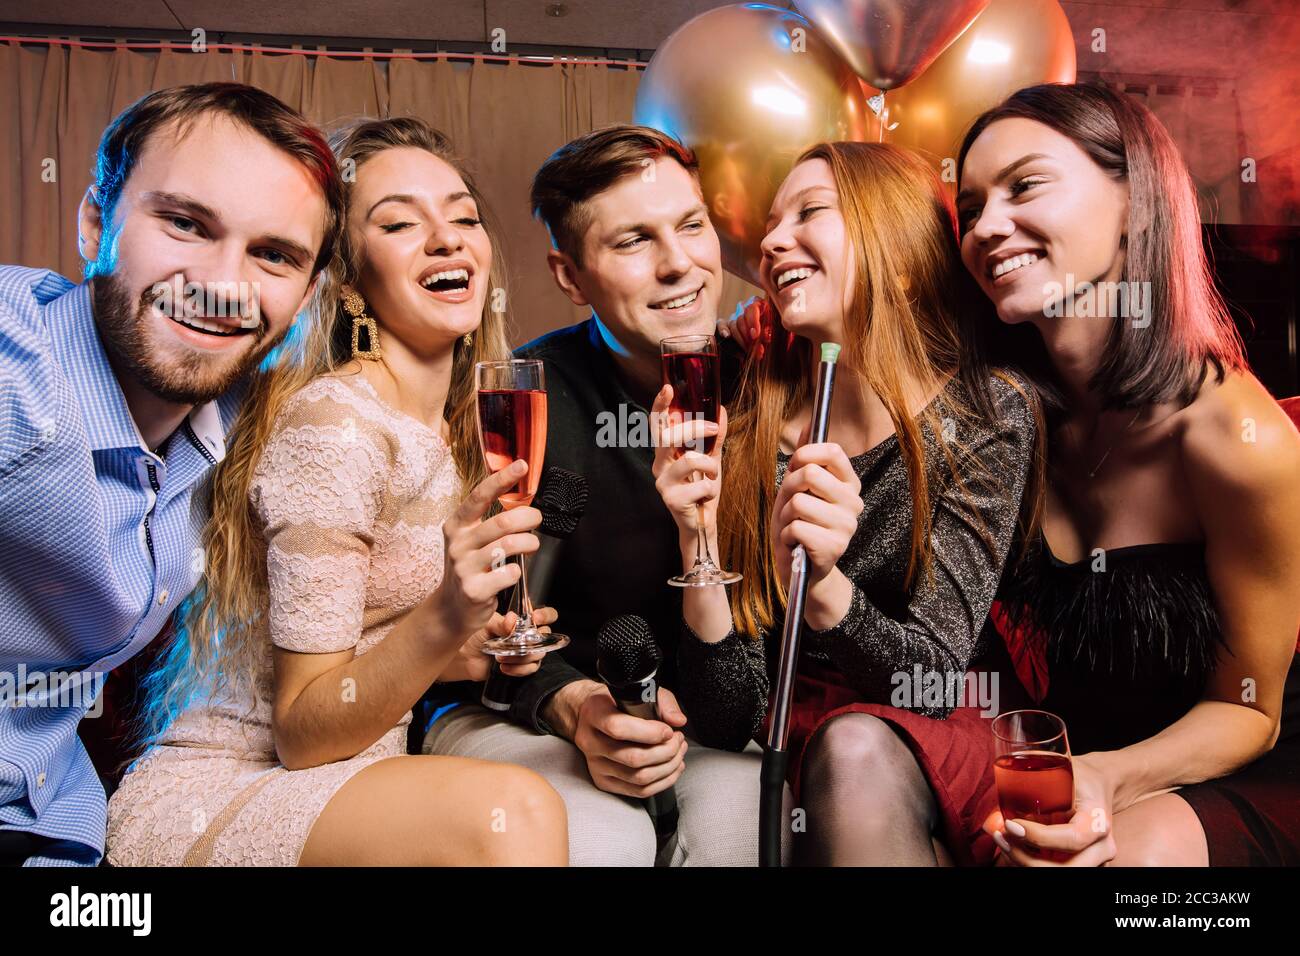 Junge Damen und Herren chillen und rocken in der Karaoke-Bar, verbringen  einen Tag in Karaoke mit Freunden, genießen Sie Zeit im Club  Stockfotografie - Alamy